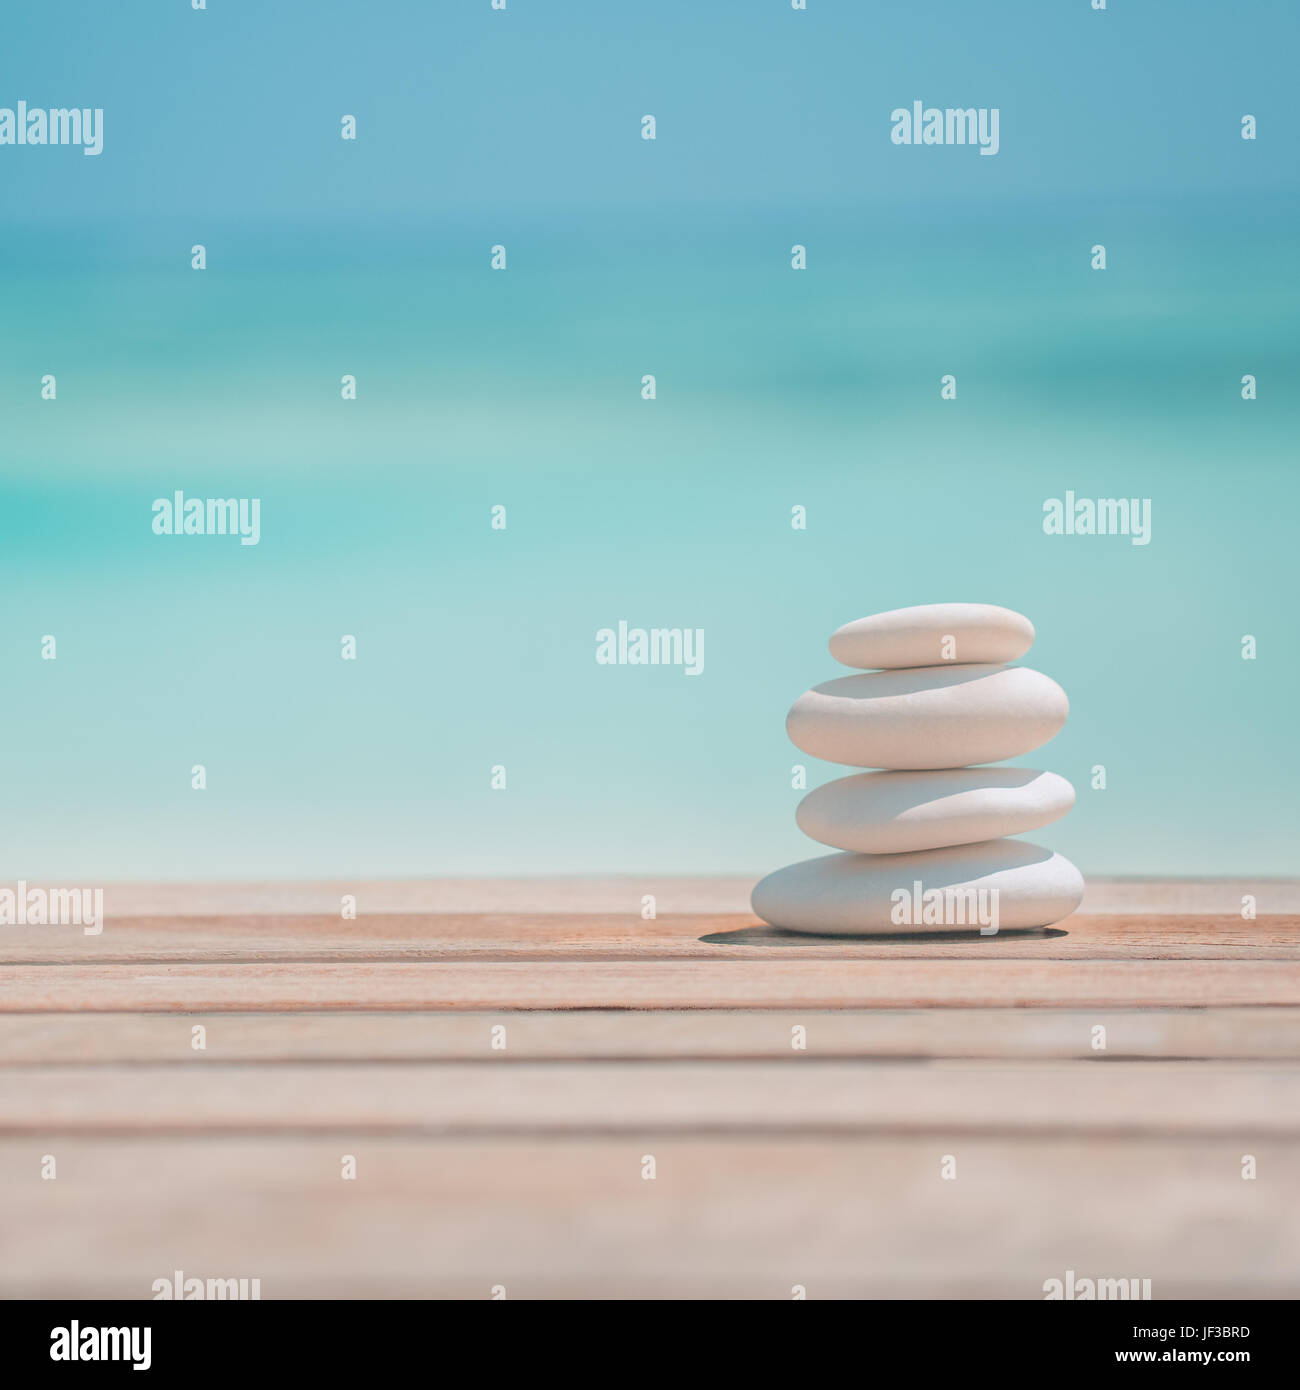 Zen pacífica piedras y arena blanda para la tranquilidad y la meditación y la inspiración el concepto de diseño de fondo Foto de stock